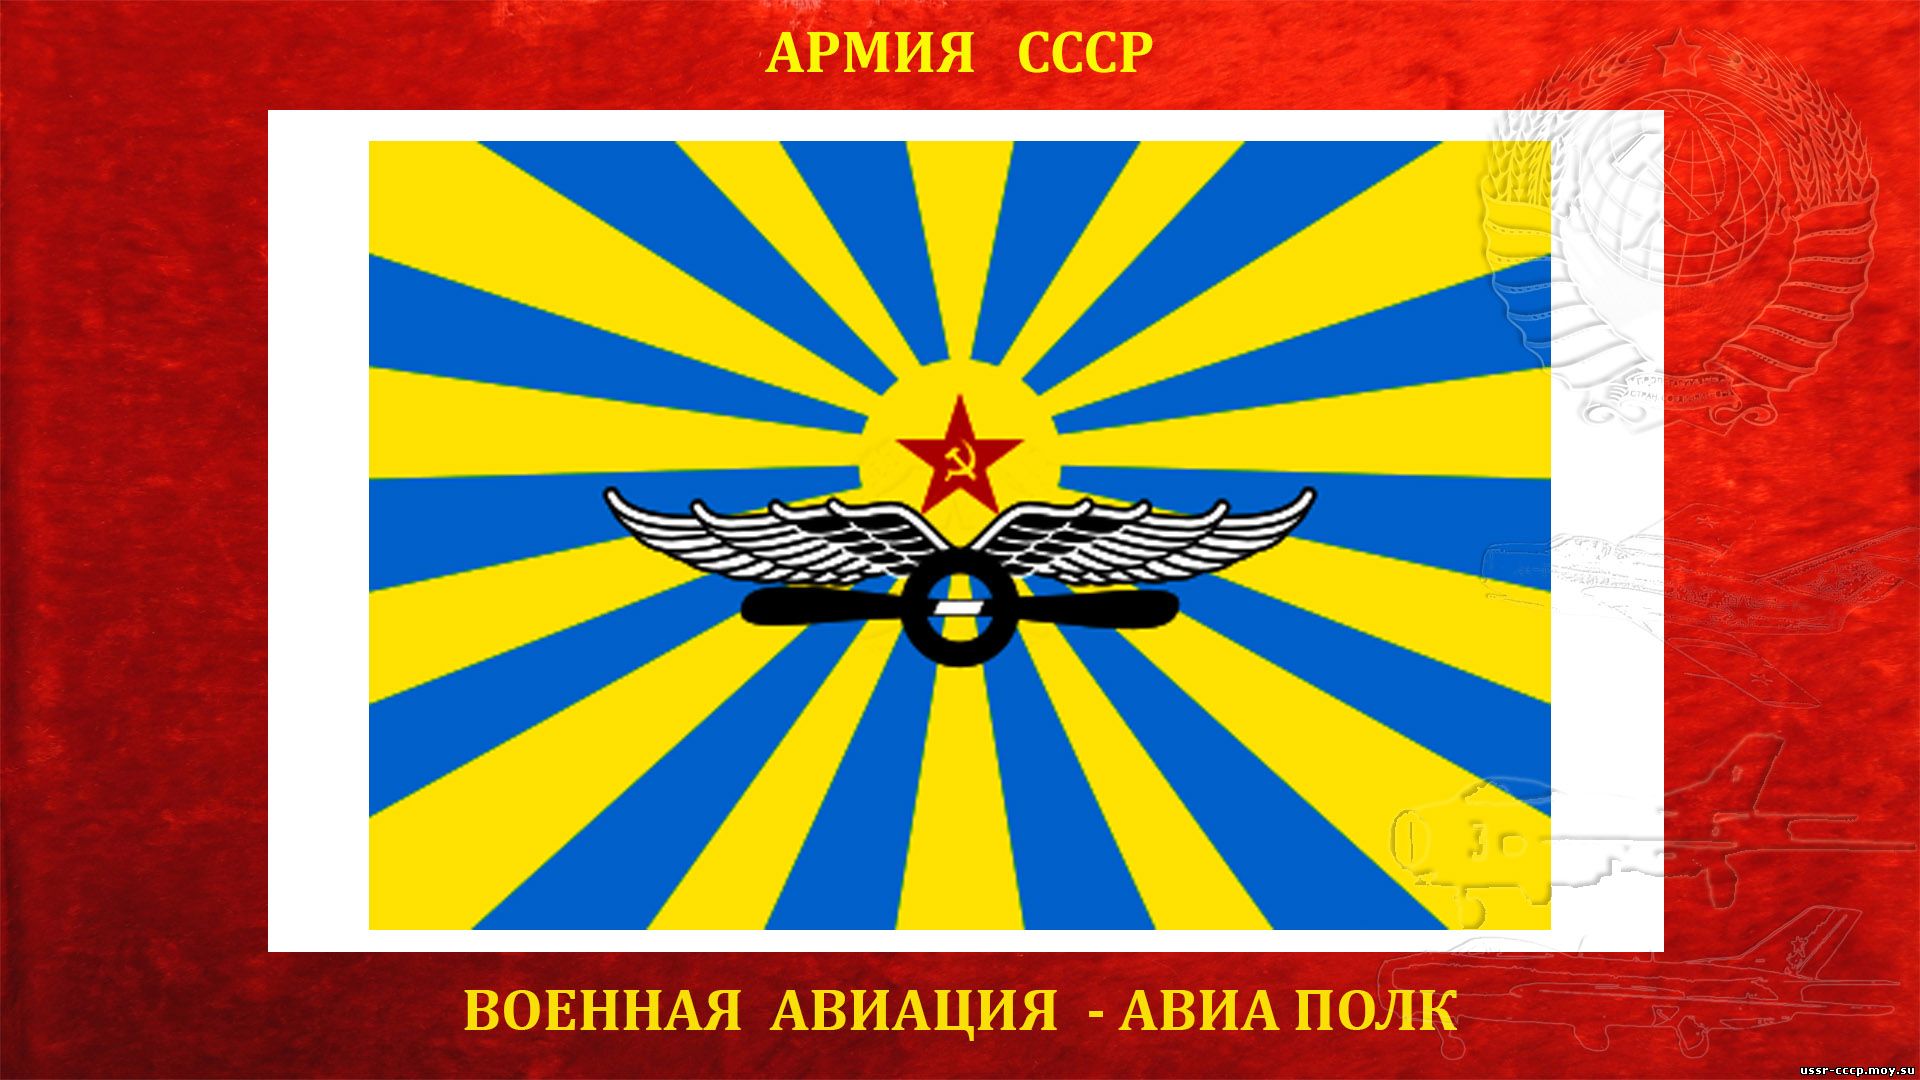 9-й гвардейский истребительный авиационный Одесский Краснознамённый ордена Суворова полк ПВО